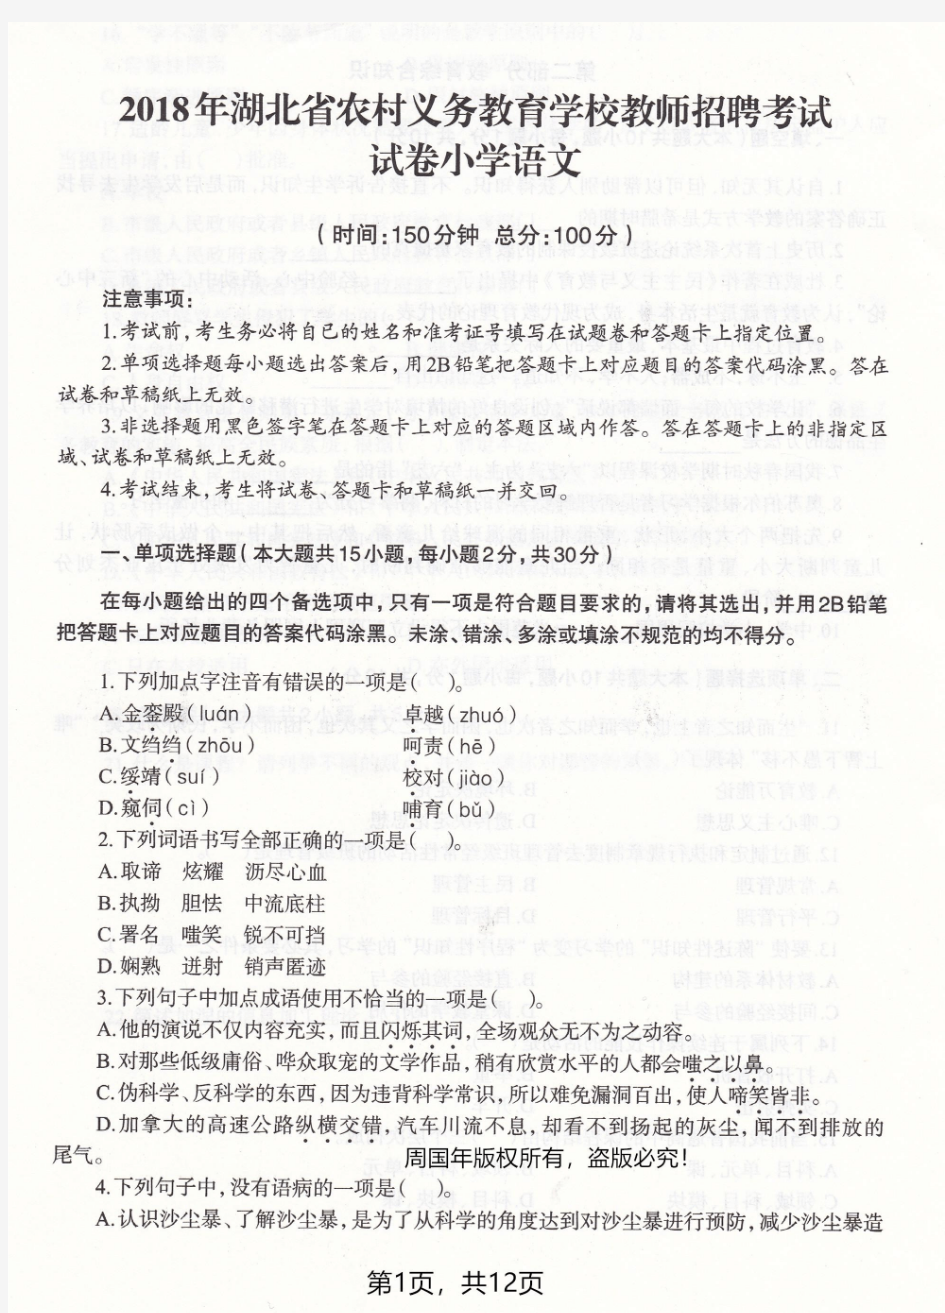 2018年湖北省农村义务教师招聘考试小学语文真题试卷及答案